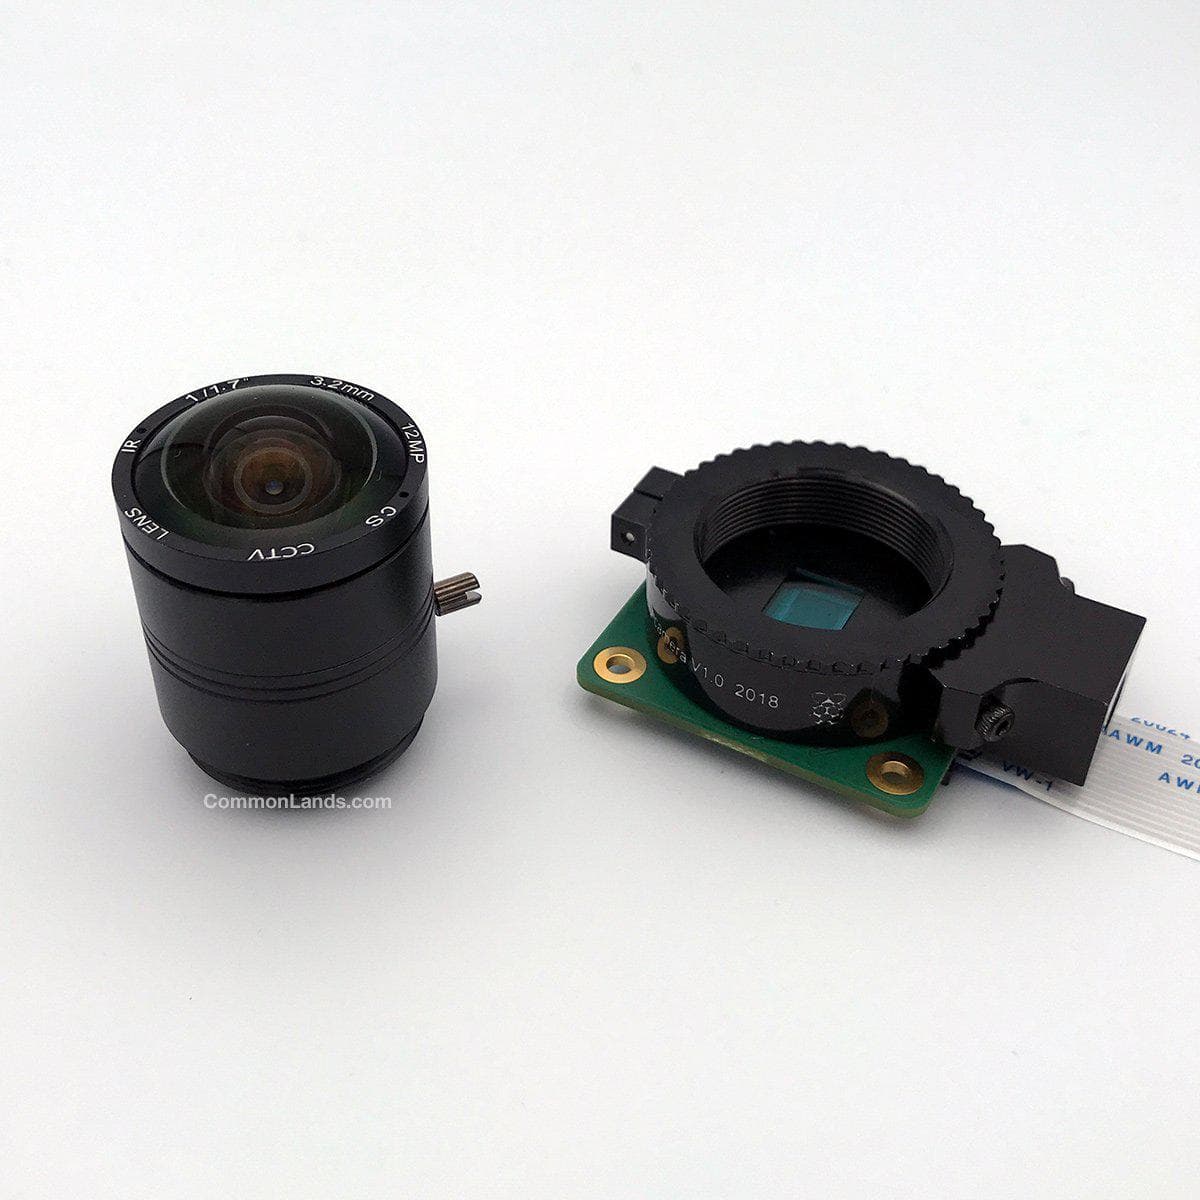 L'objectif CommonLands CIL03.2-F1.8-CSNOIR 3.2mm EFL est photographié à côté de la caméra HQ Raspberry Pi.